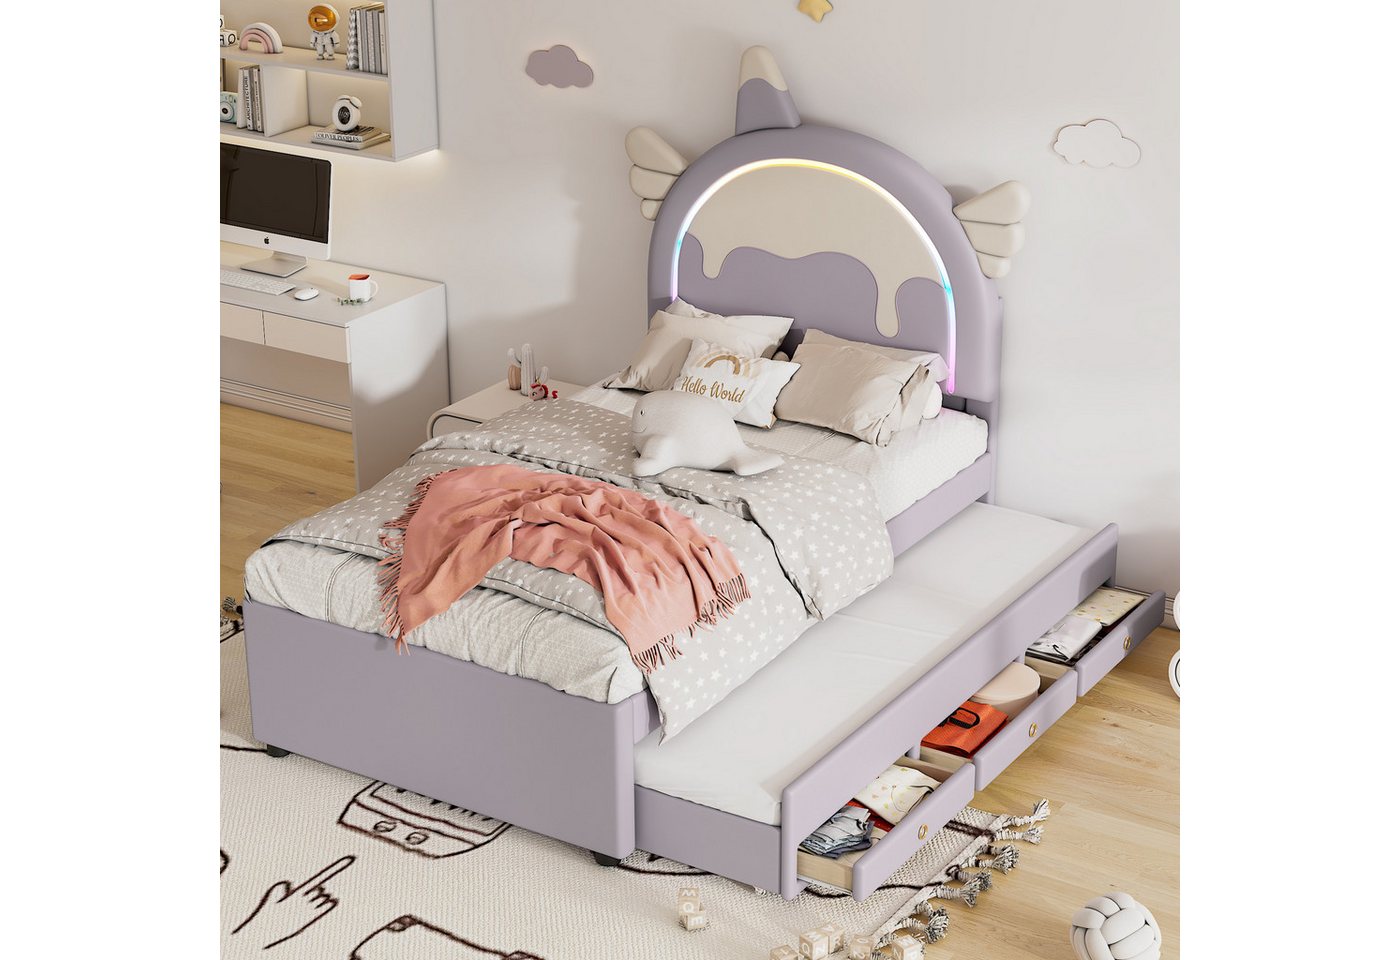 REDOM Kinderbett ausgestattet mit ausziehbares rollbett, kunstleder-Material (Einhornform, 90*200cm), ohne Matratze von REDOM